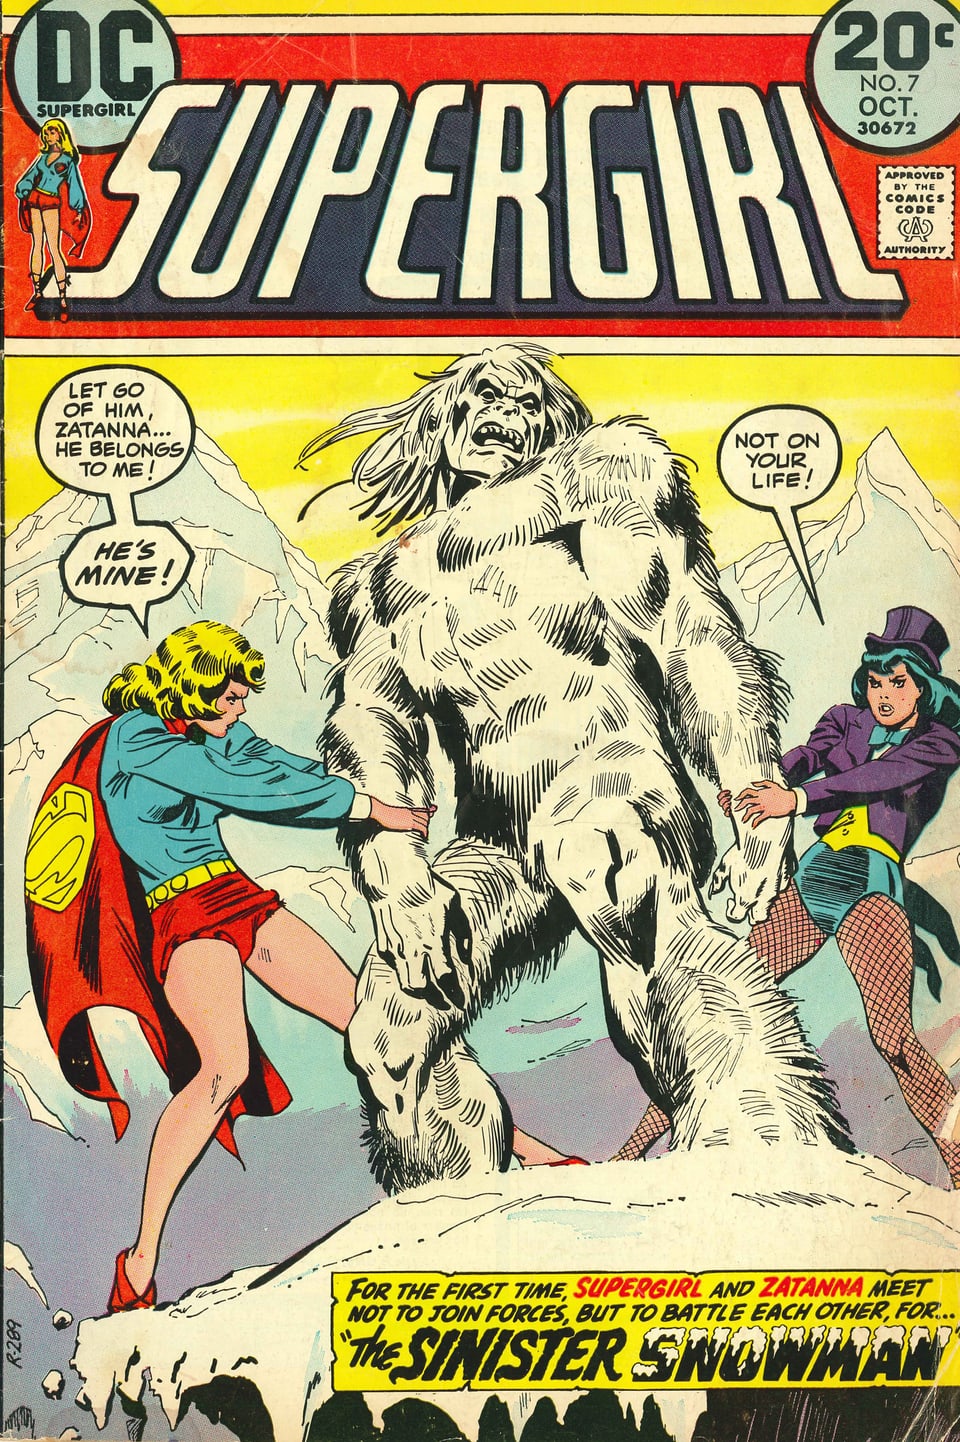 Titelbild eines Supergirl-Comics, das Supergirl im Kampf mit einem Yeti zeigt.